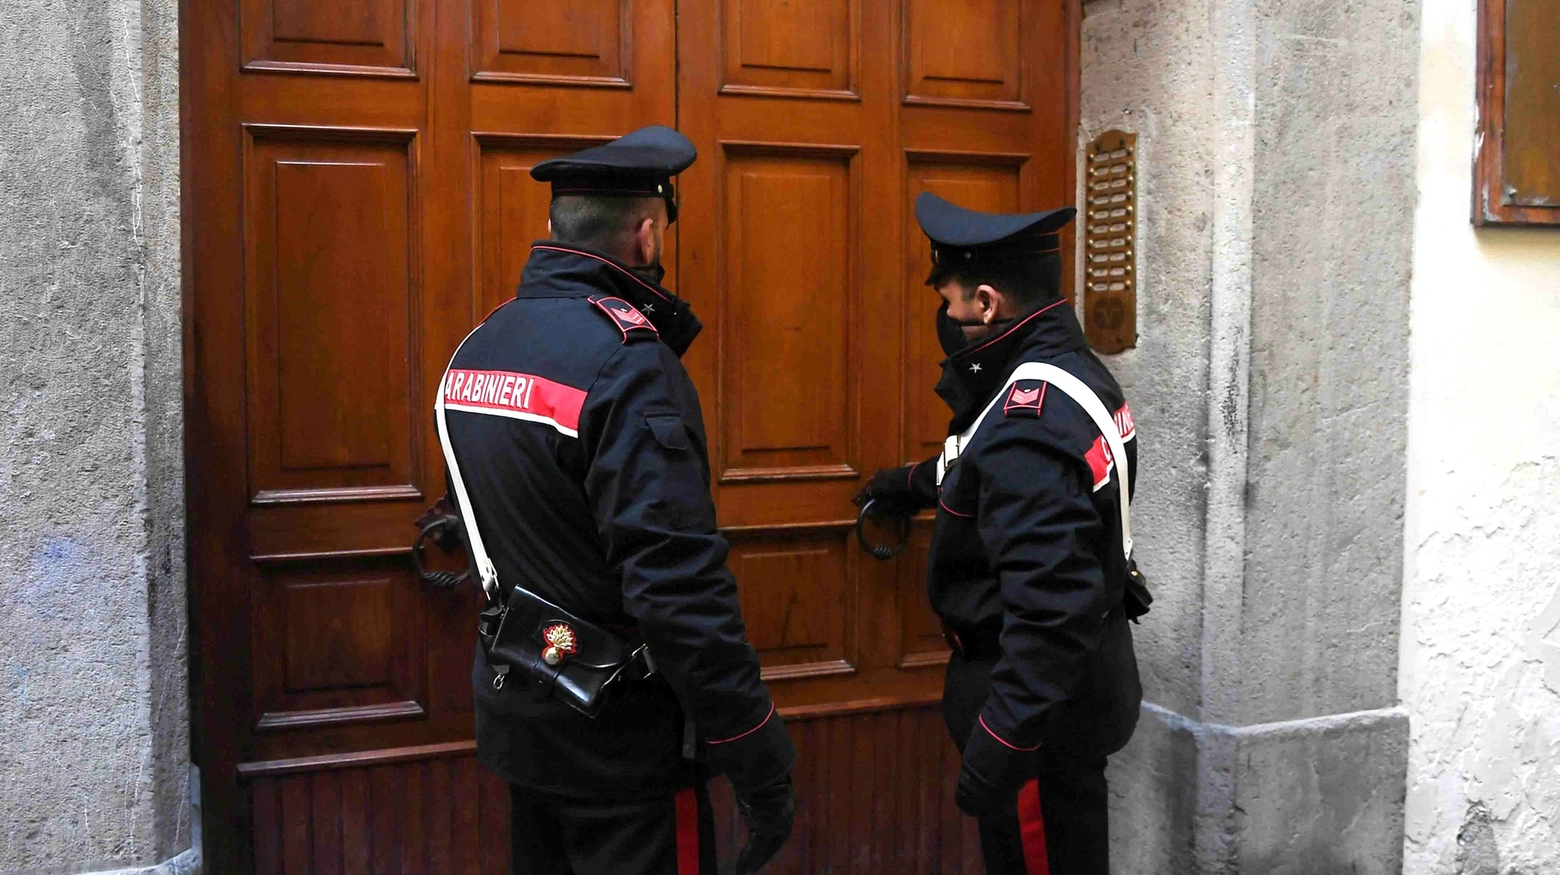 All'arrivo dei carabinieri, lui la stava ancora malmenando (foto d'archivio)